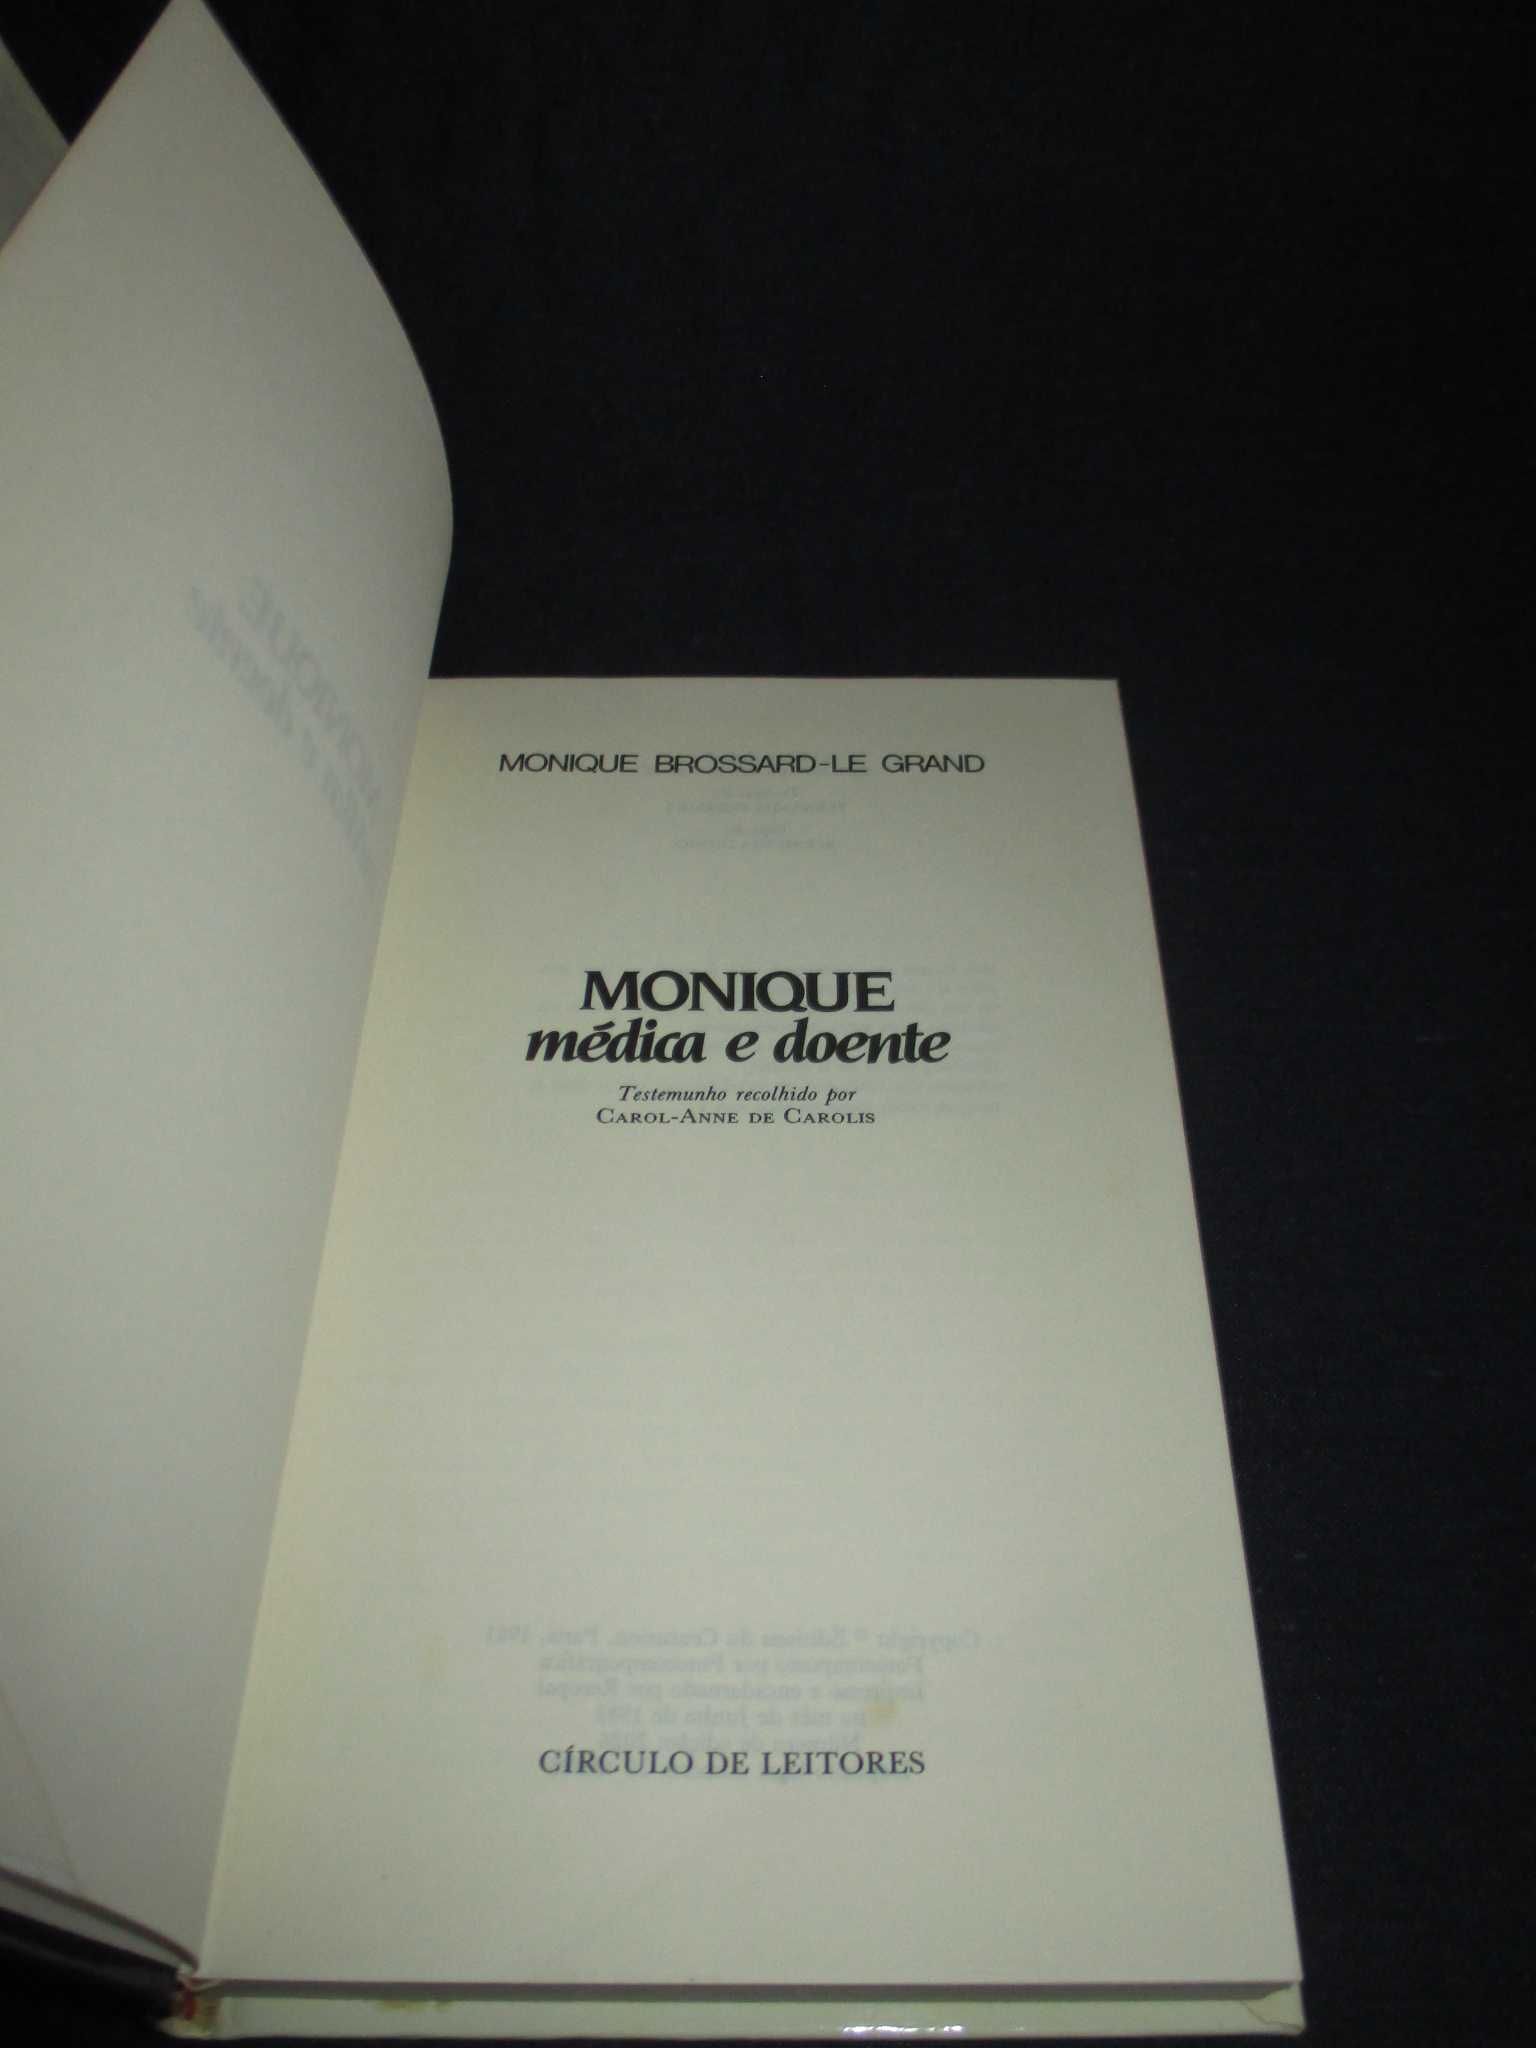 Livro Monique médica e doente Monique Brossard-Le Grand